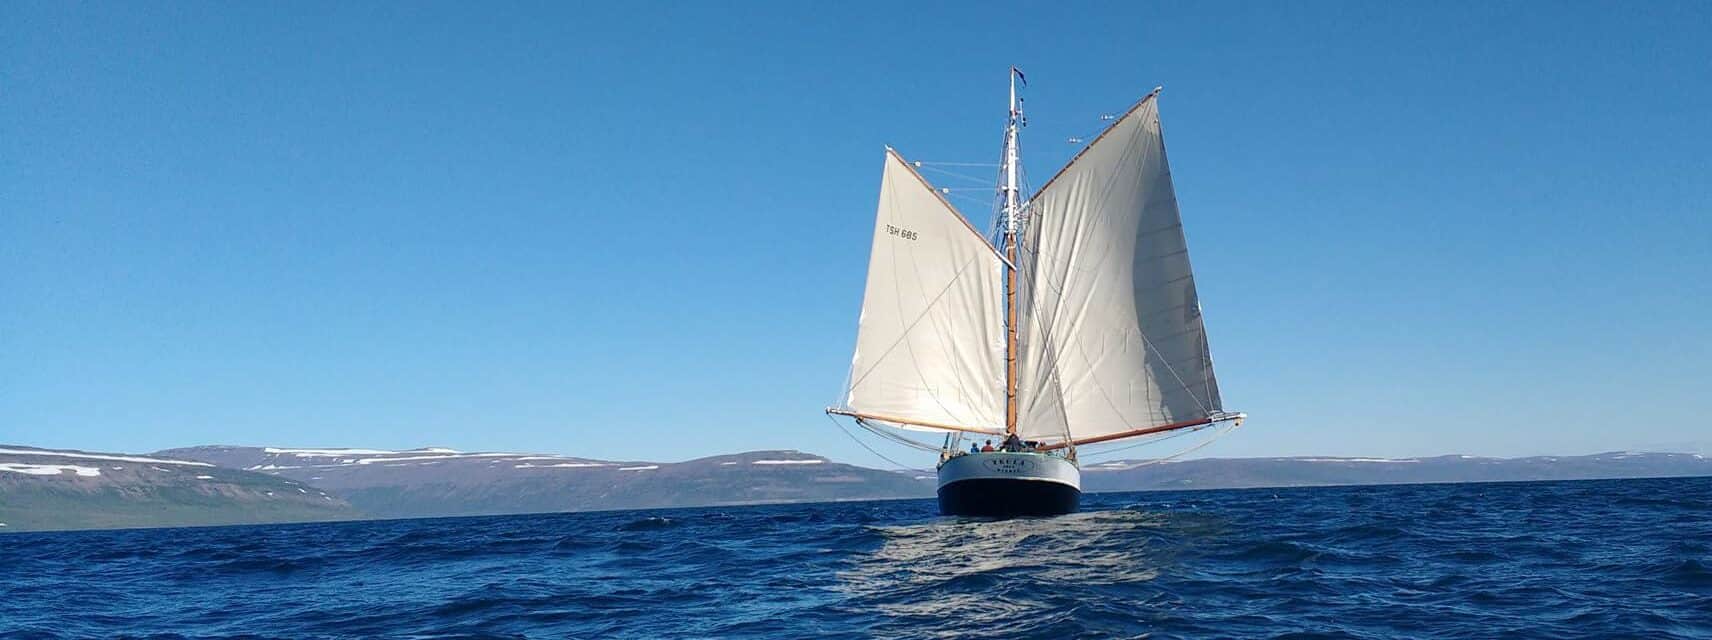 gaff rigged sailboat